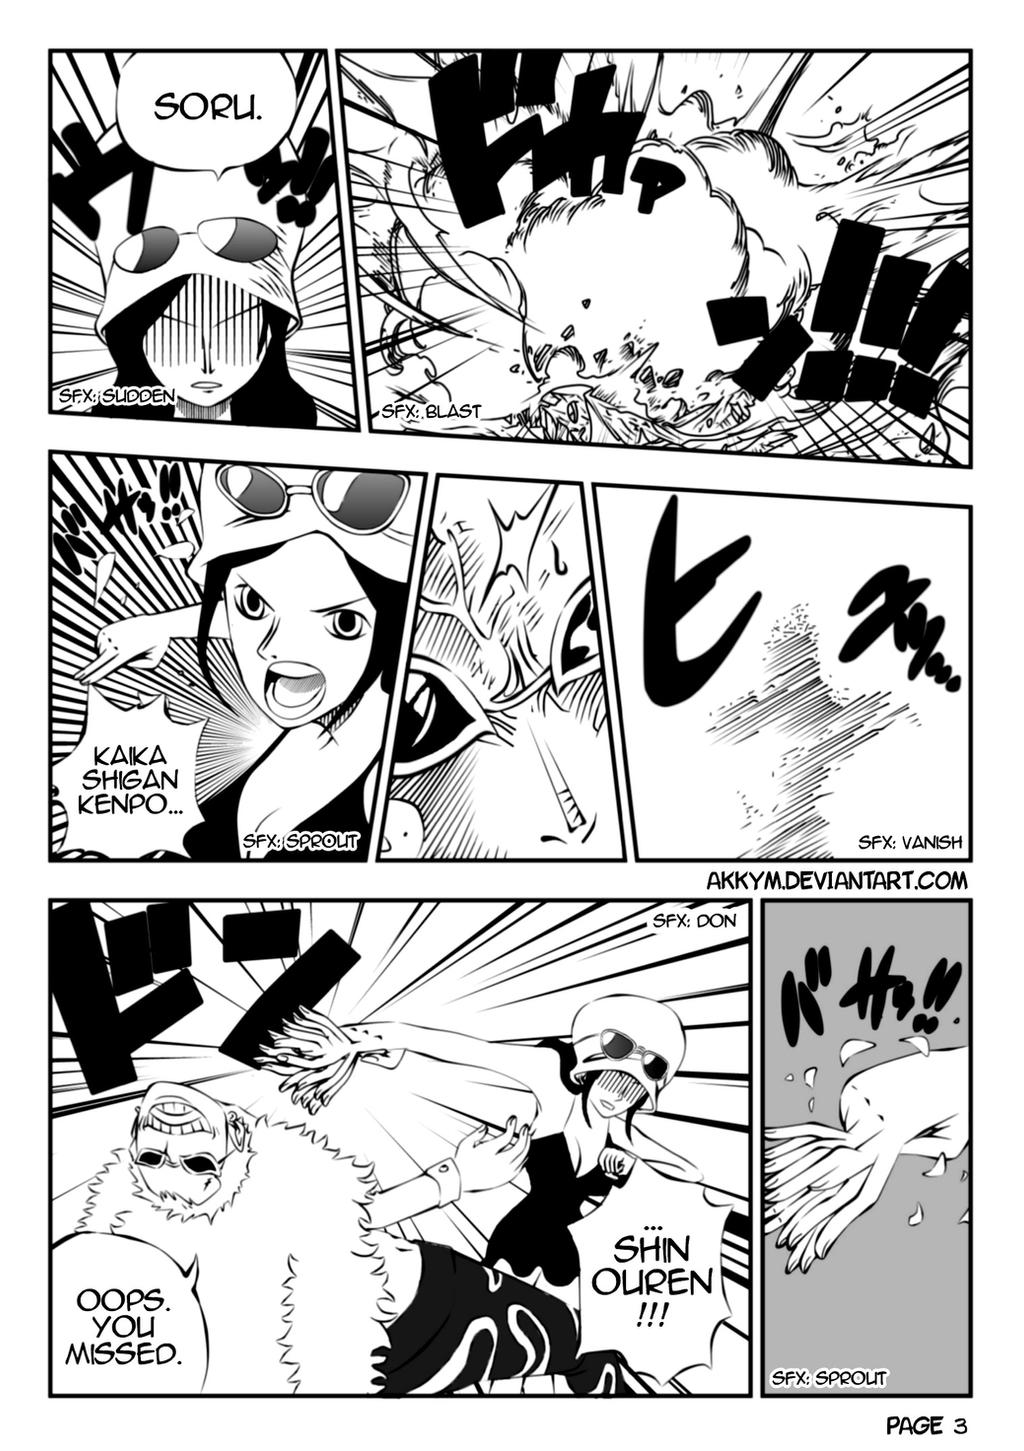 Rokushiki Robin 34 by Shinjojin on DeviantArt